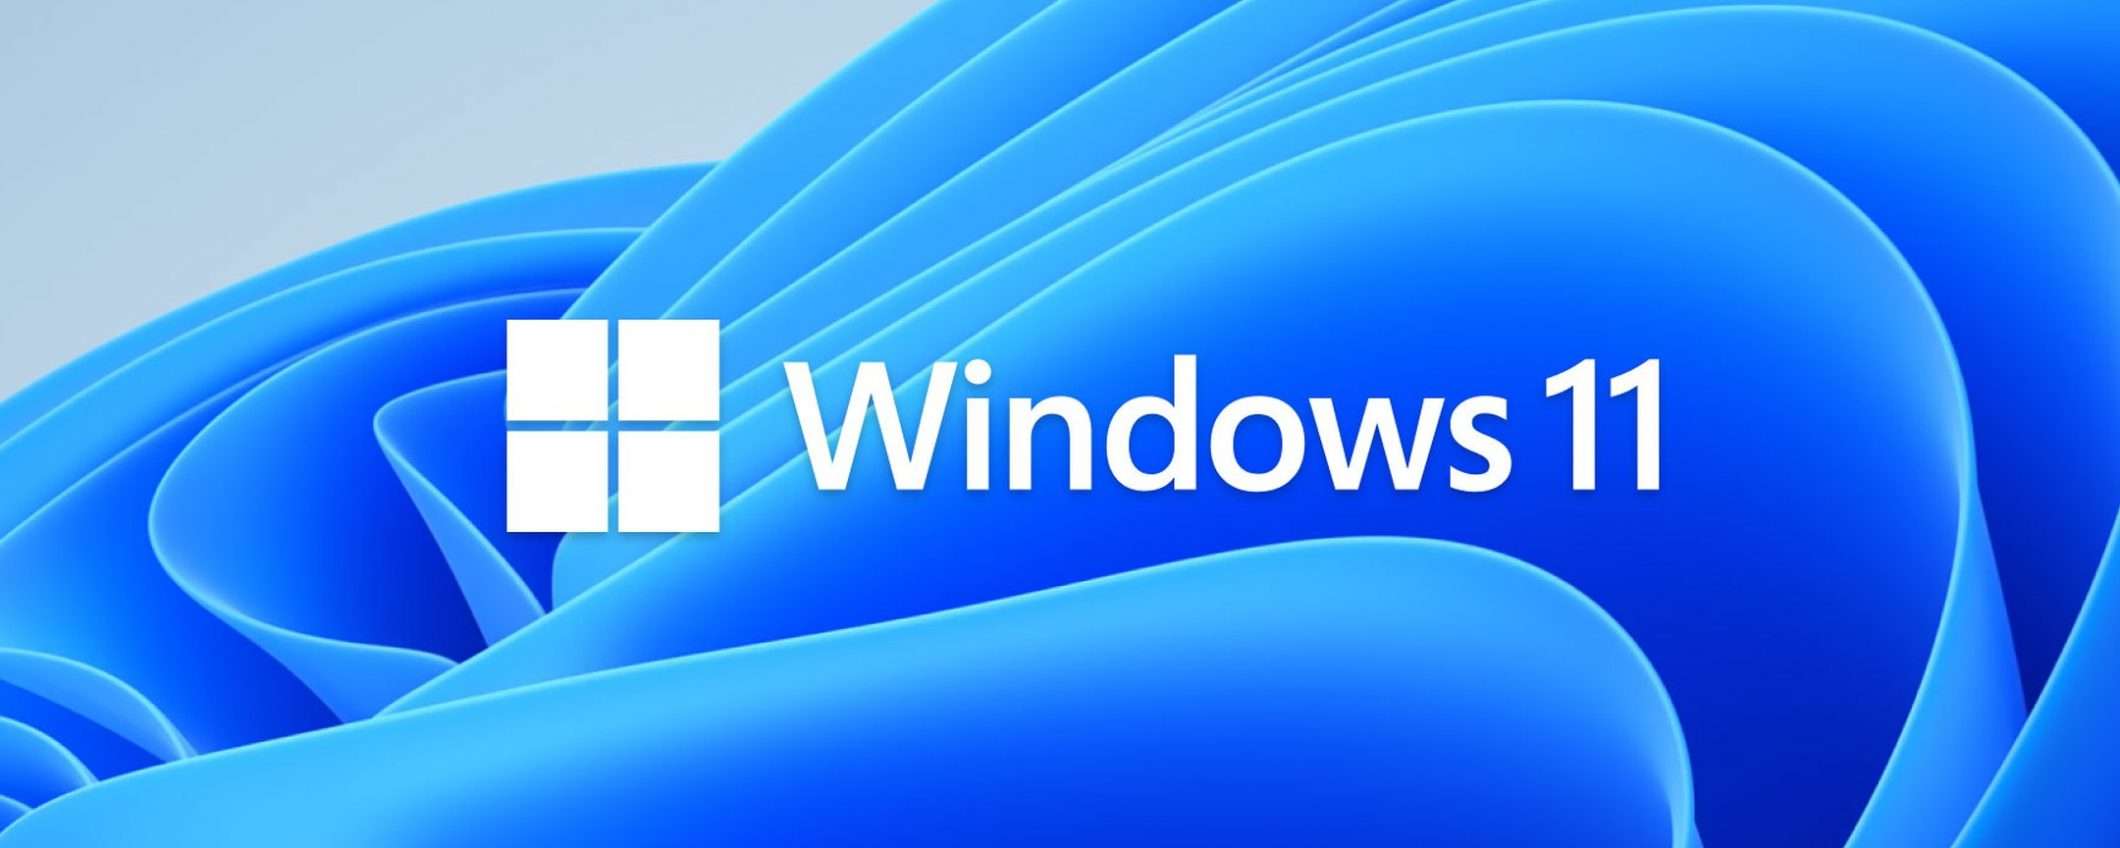 Windows 11 o Windows 10: fai la tua scelta